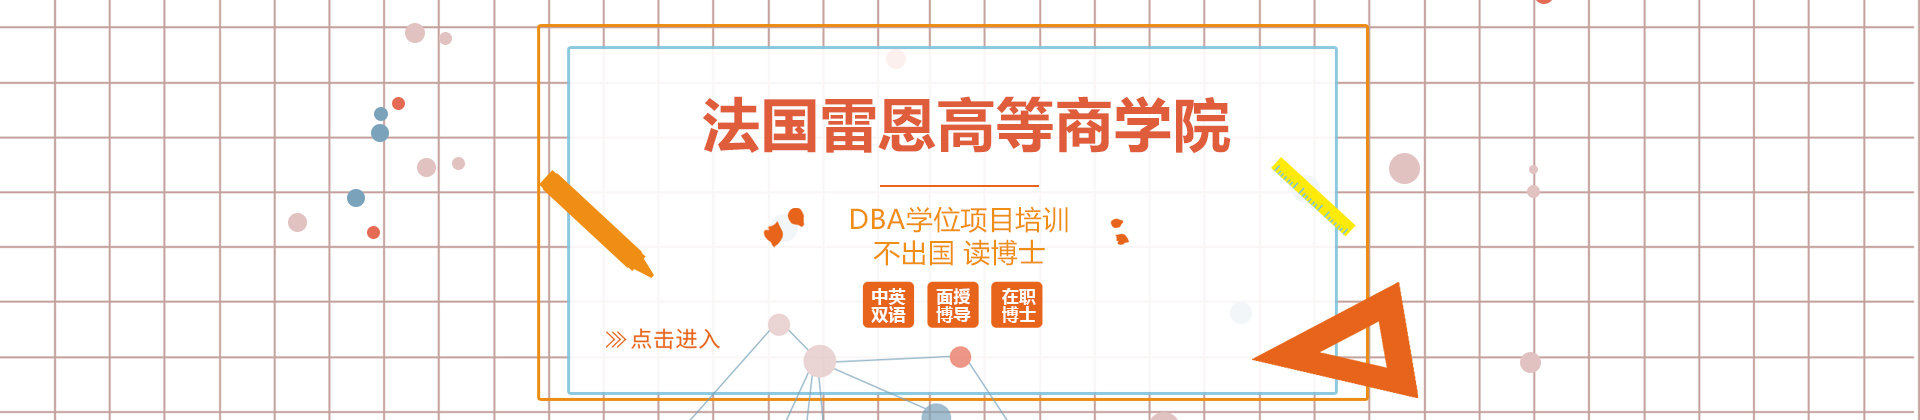 上海法国雷恩高等商学院DBA学位项目培训